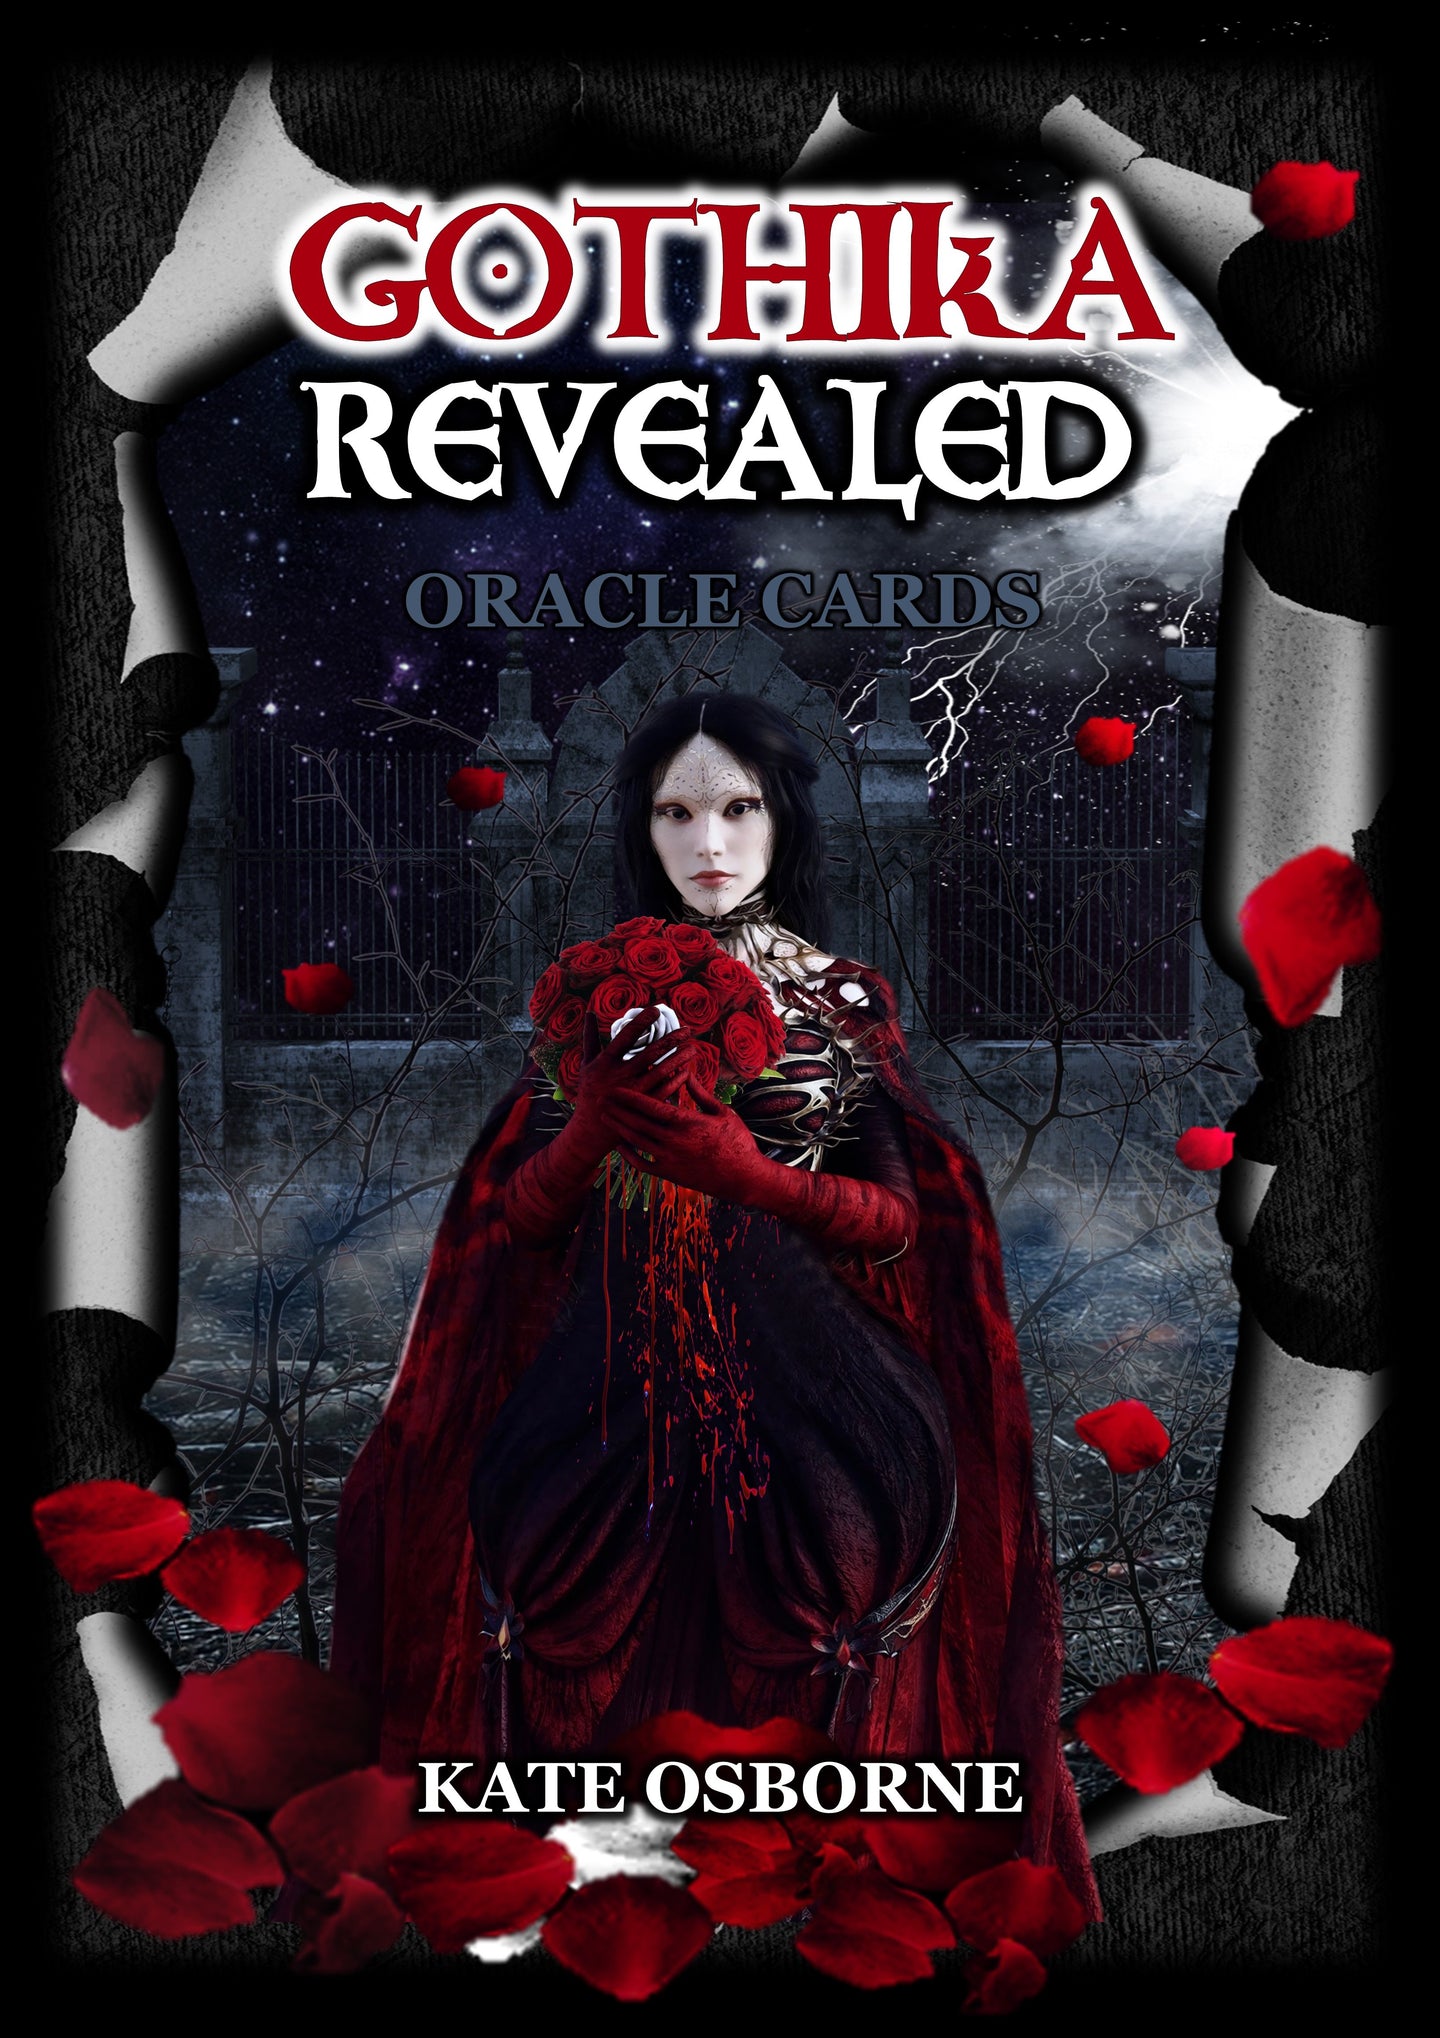 Gothika Revealed Oracle Cards